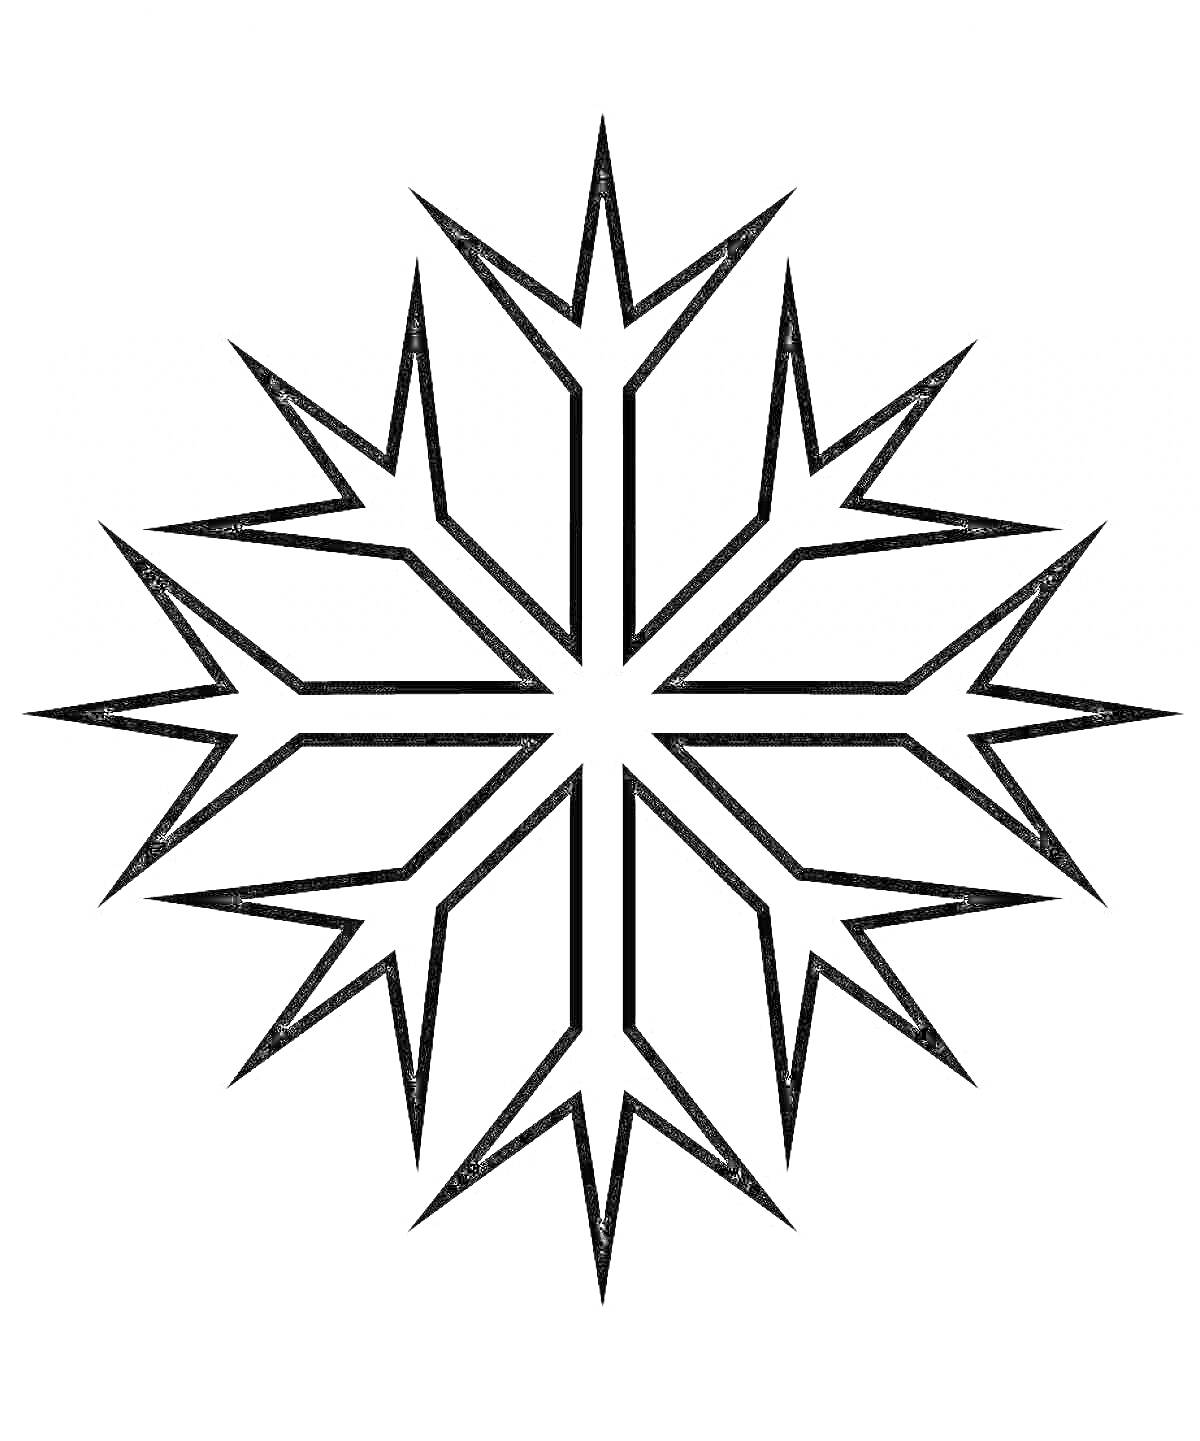 Раскраска Снежинка с шестью ветвями и острыми краями